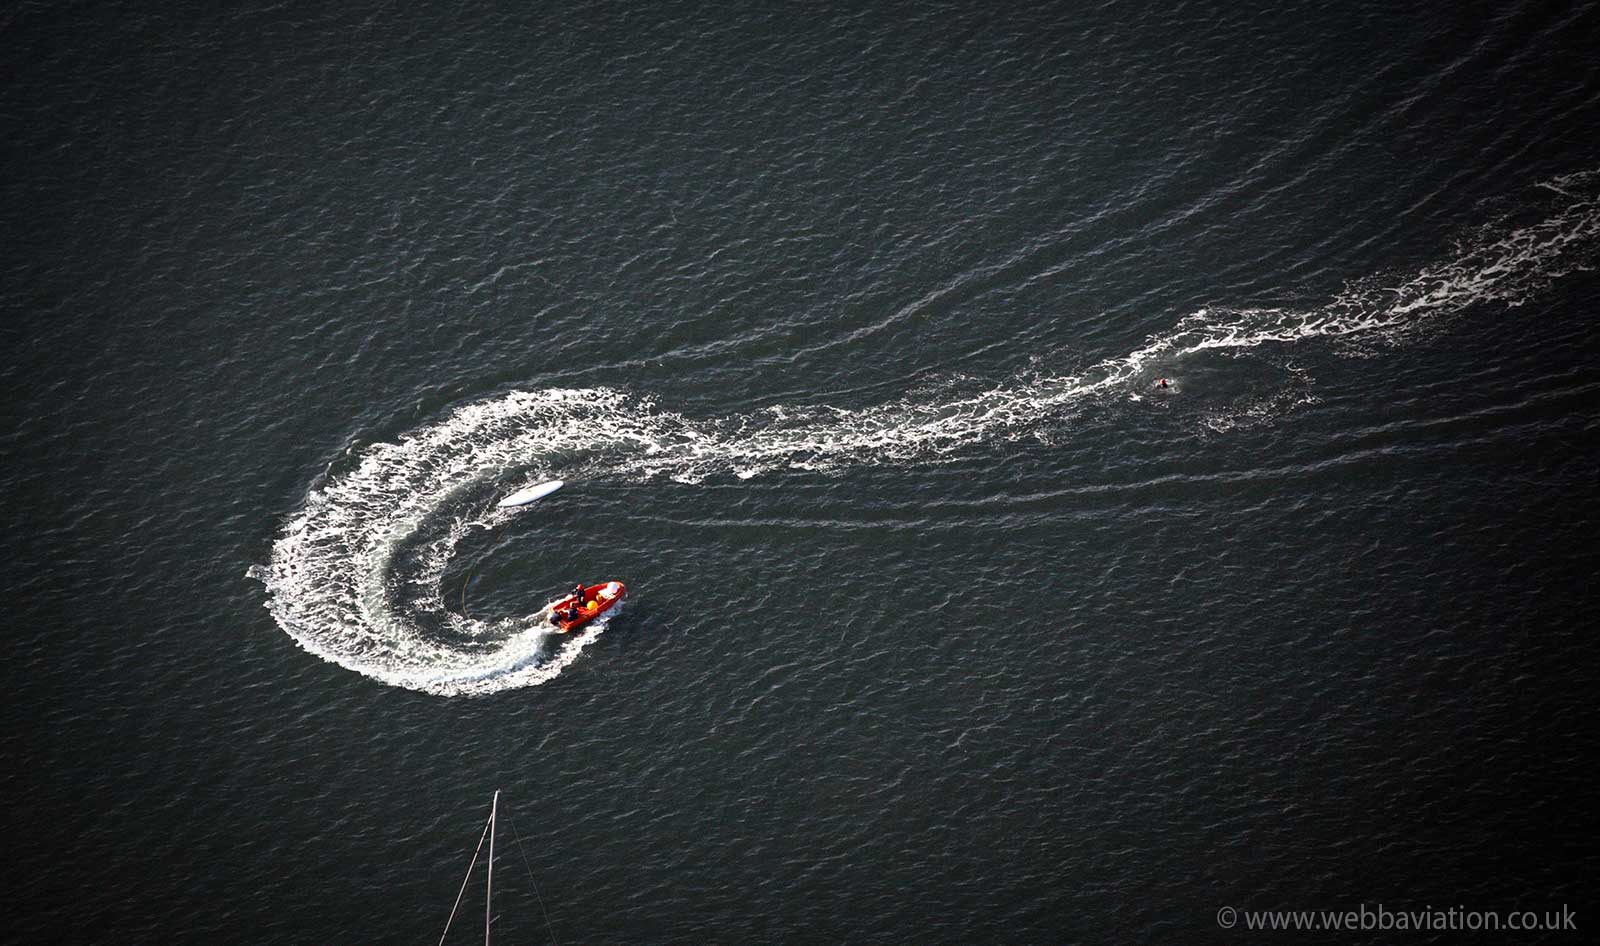  fishing boat at  Caernarfon aerial photograph 